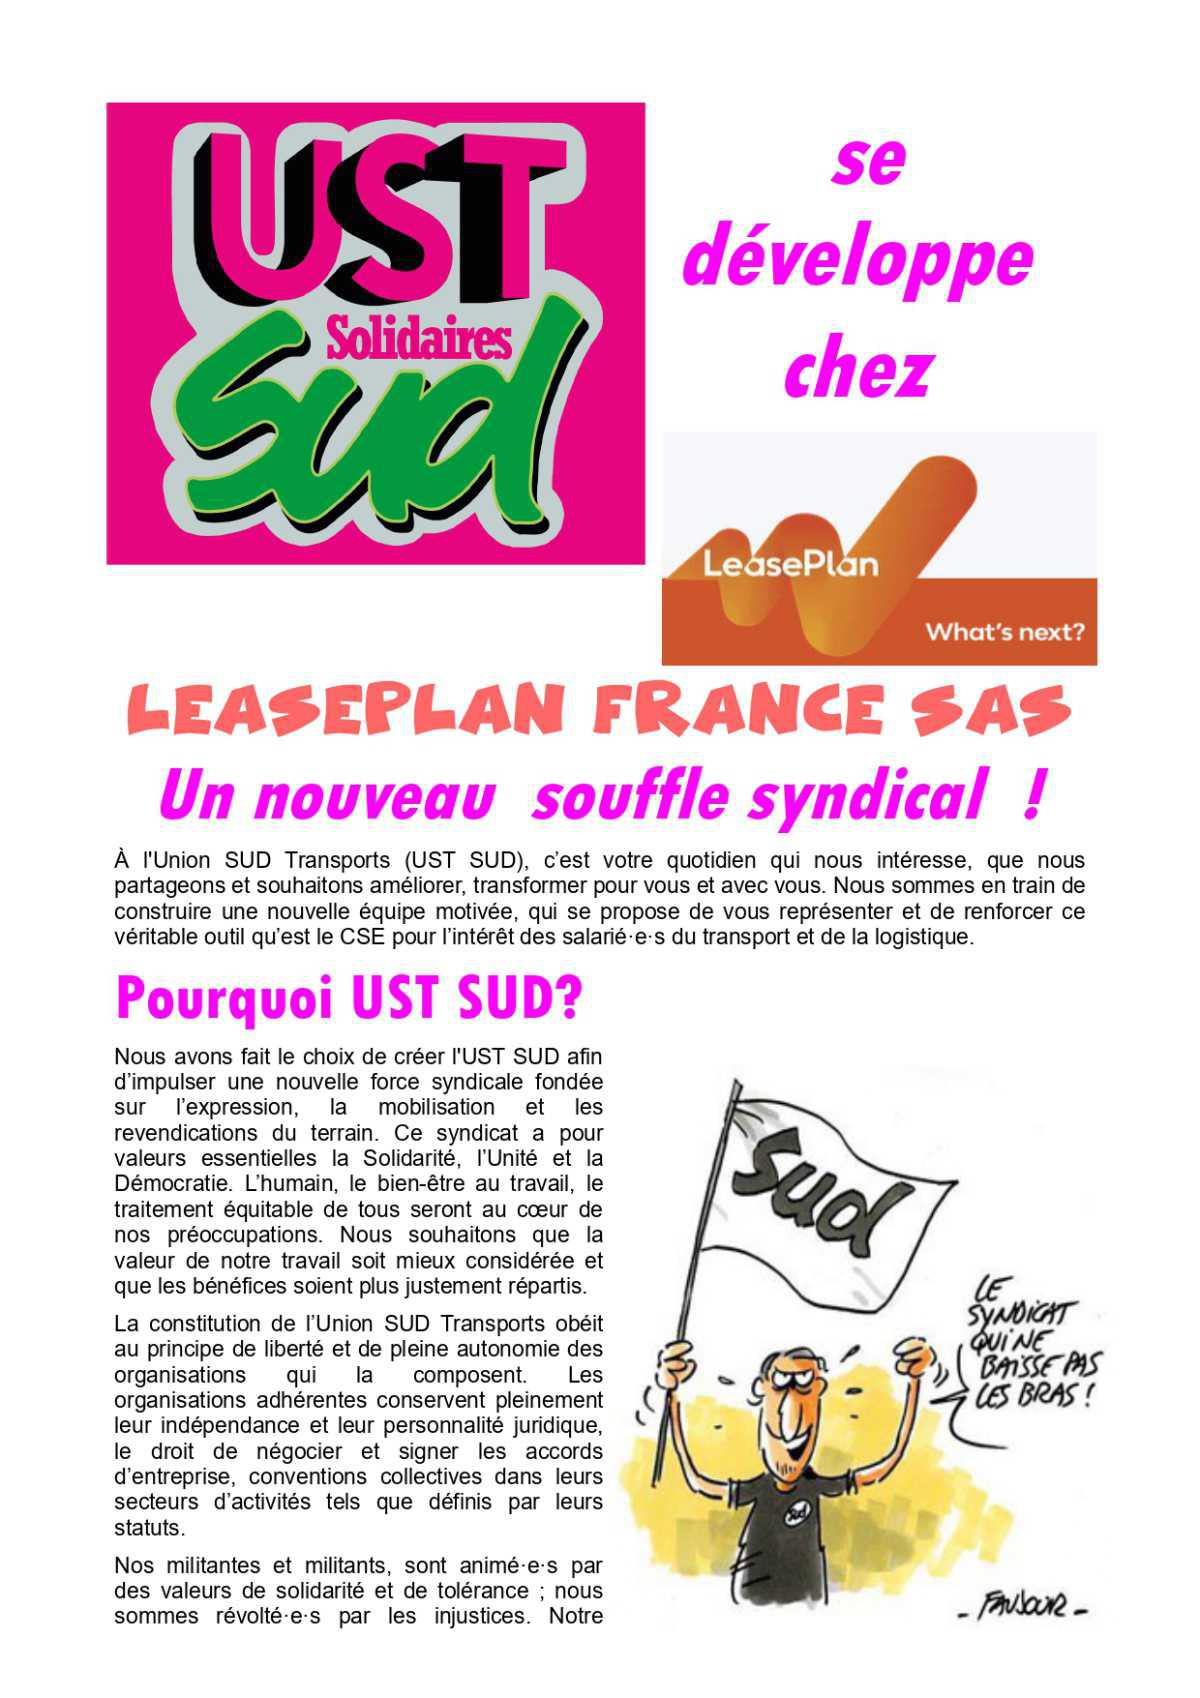 L'UST-SUD s'implante chez LEASEPLAN FRANCE SAS !